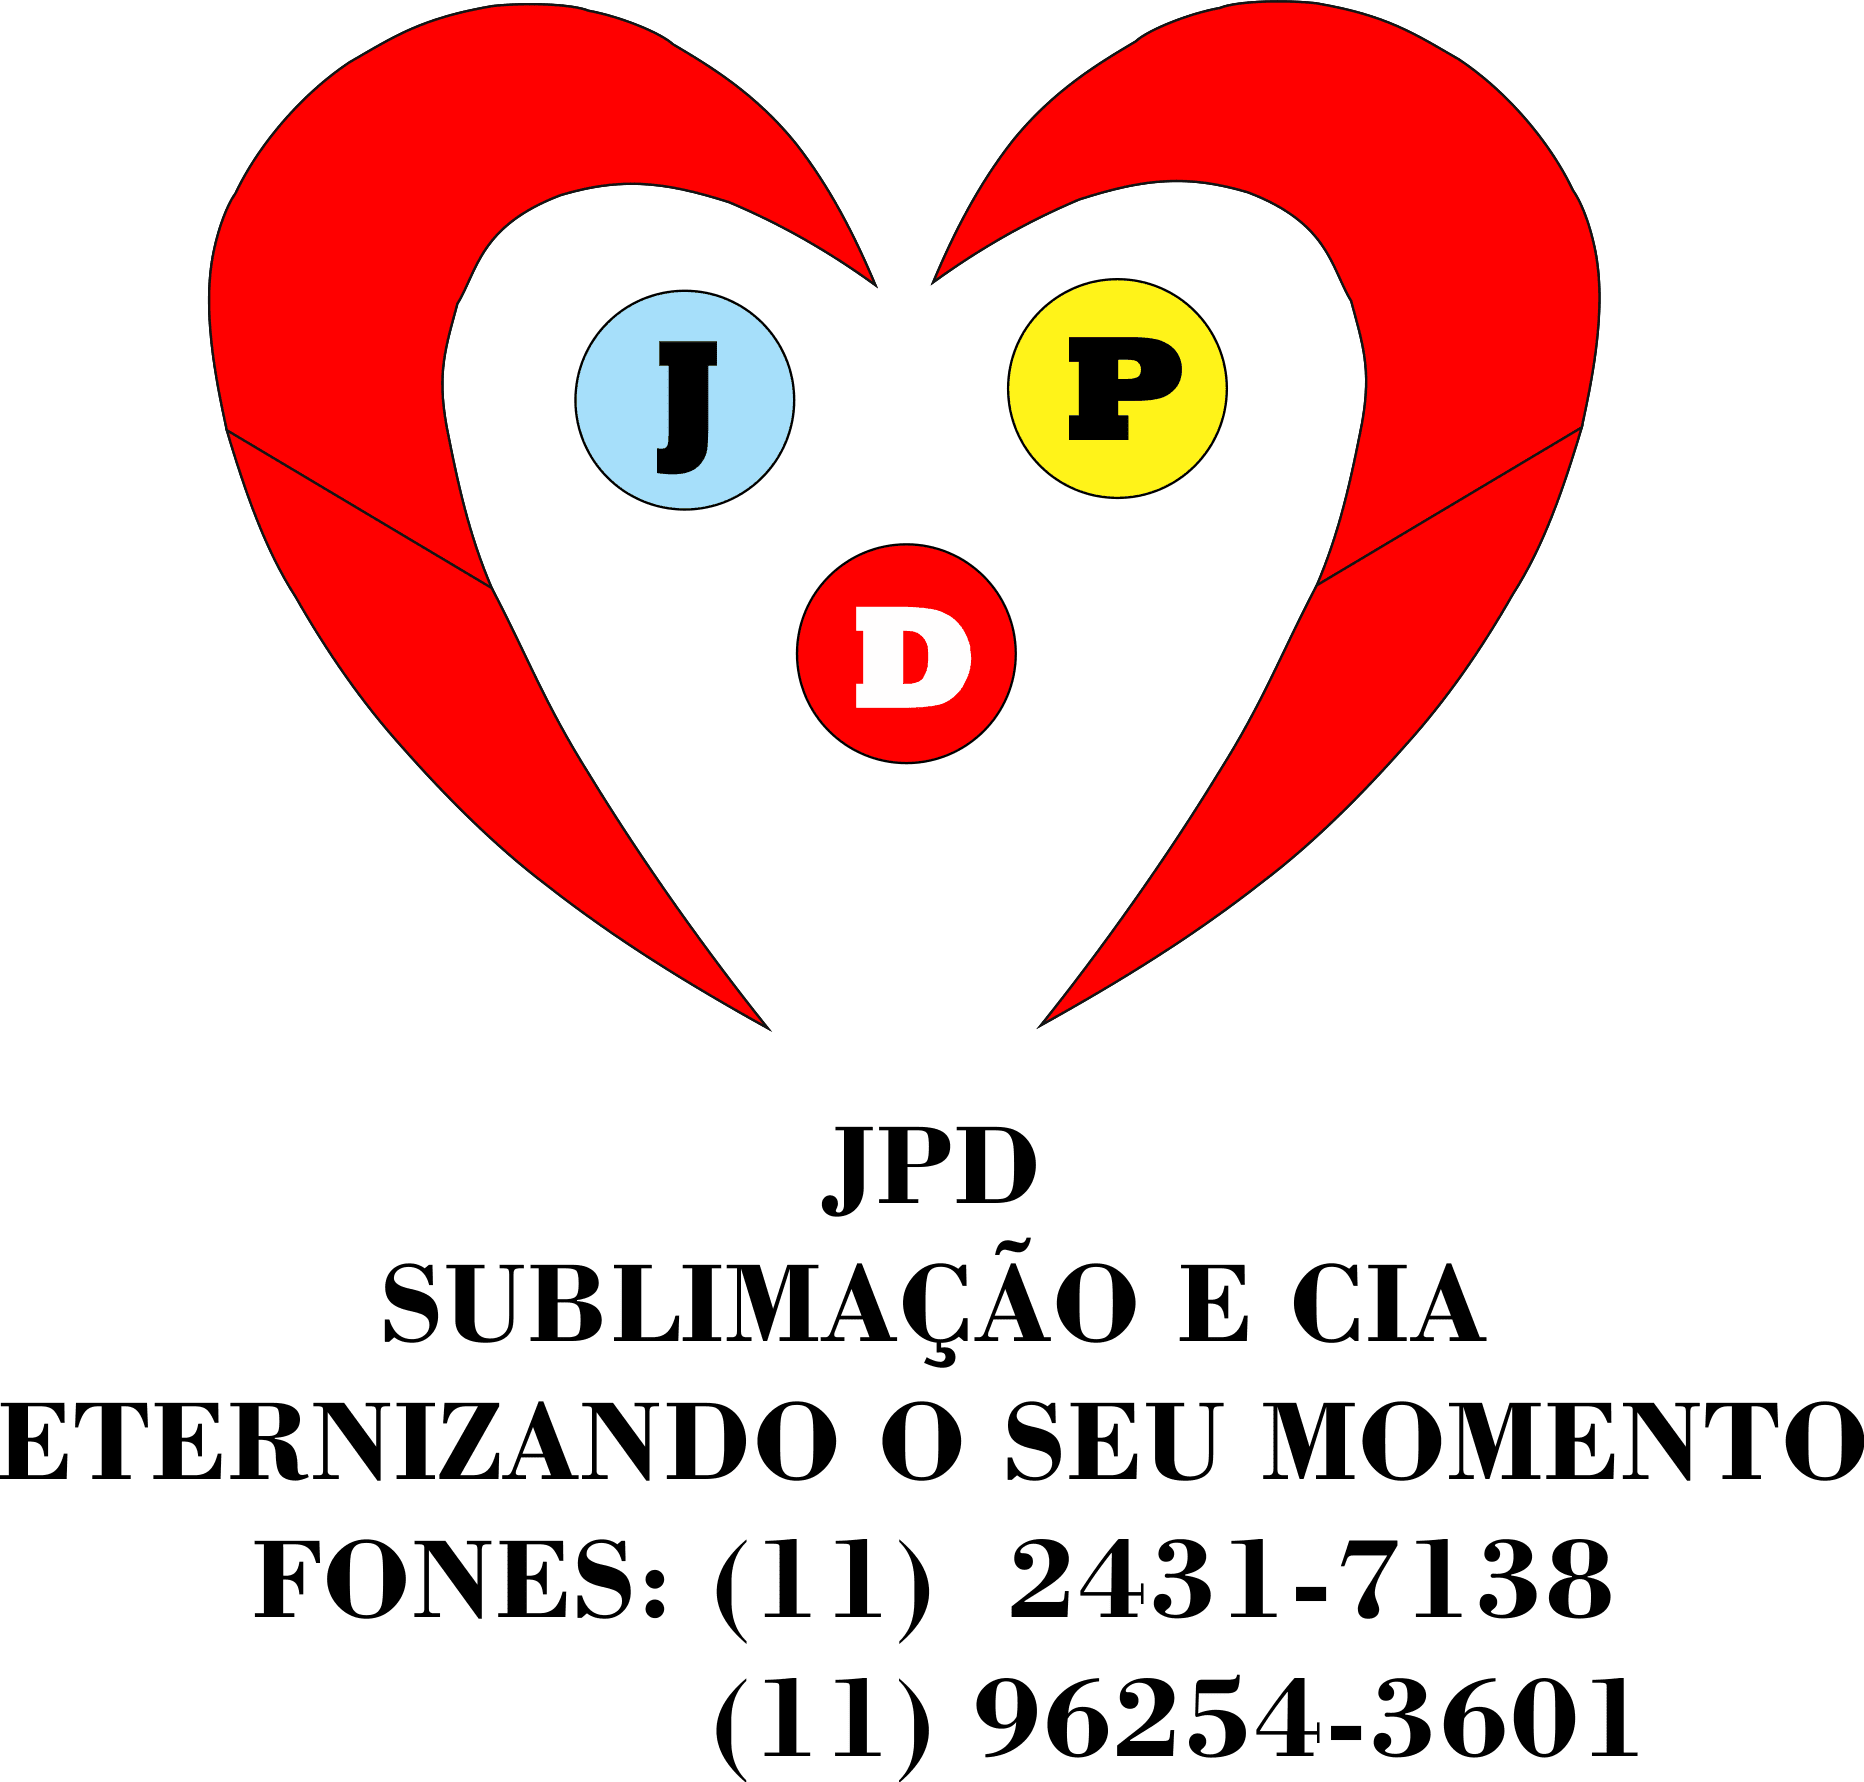 JPD Sublimação e Cia